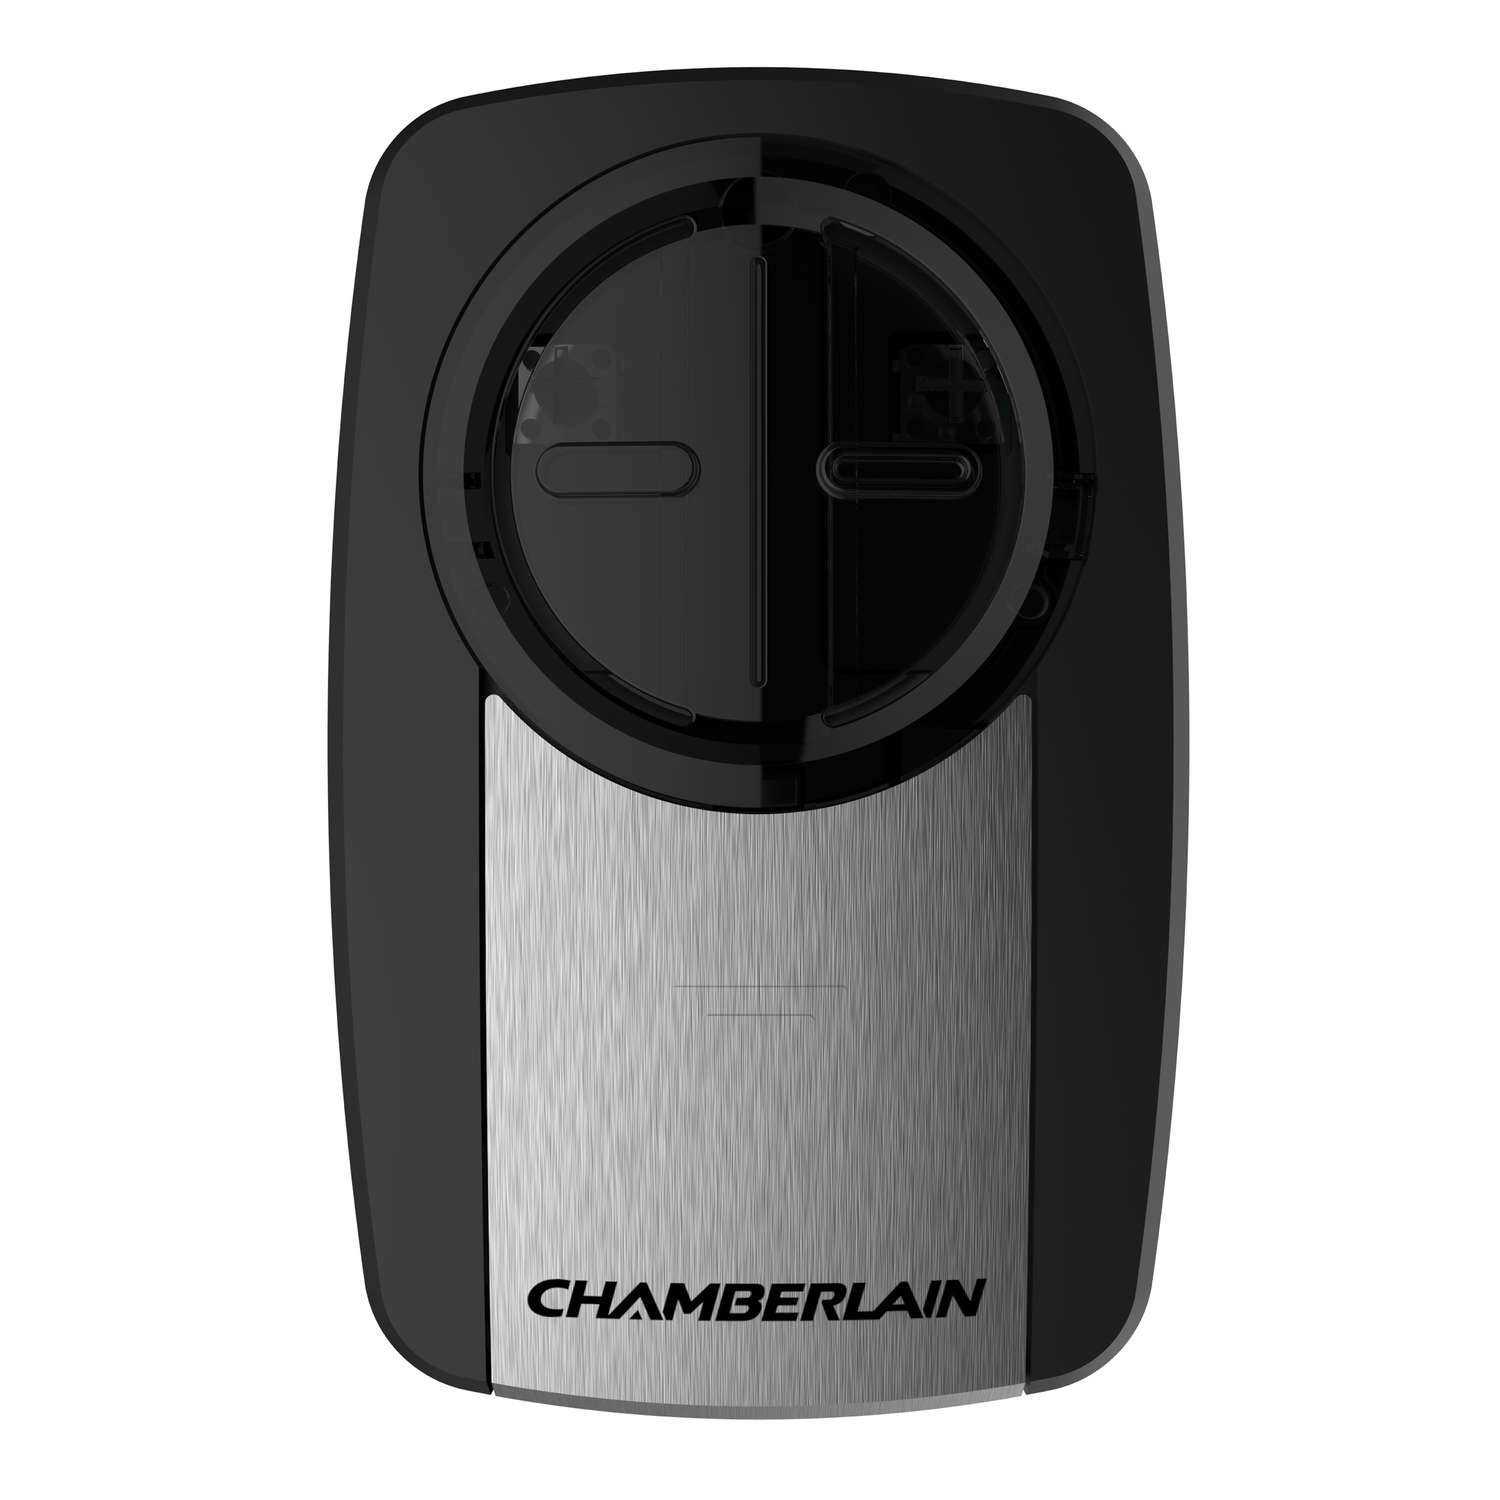 Chamberlain Clicker 2 Door Garage Door Opener Remote For All Major Brands Manufactured After 1993 Ace Hardware